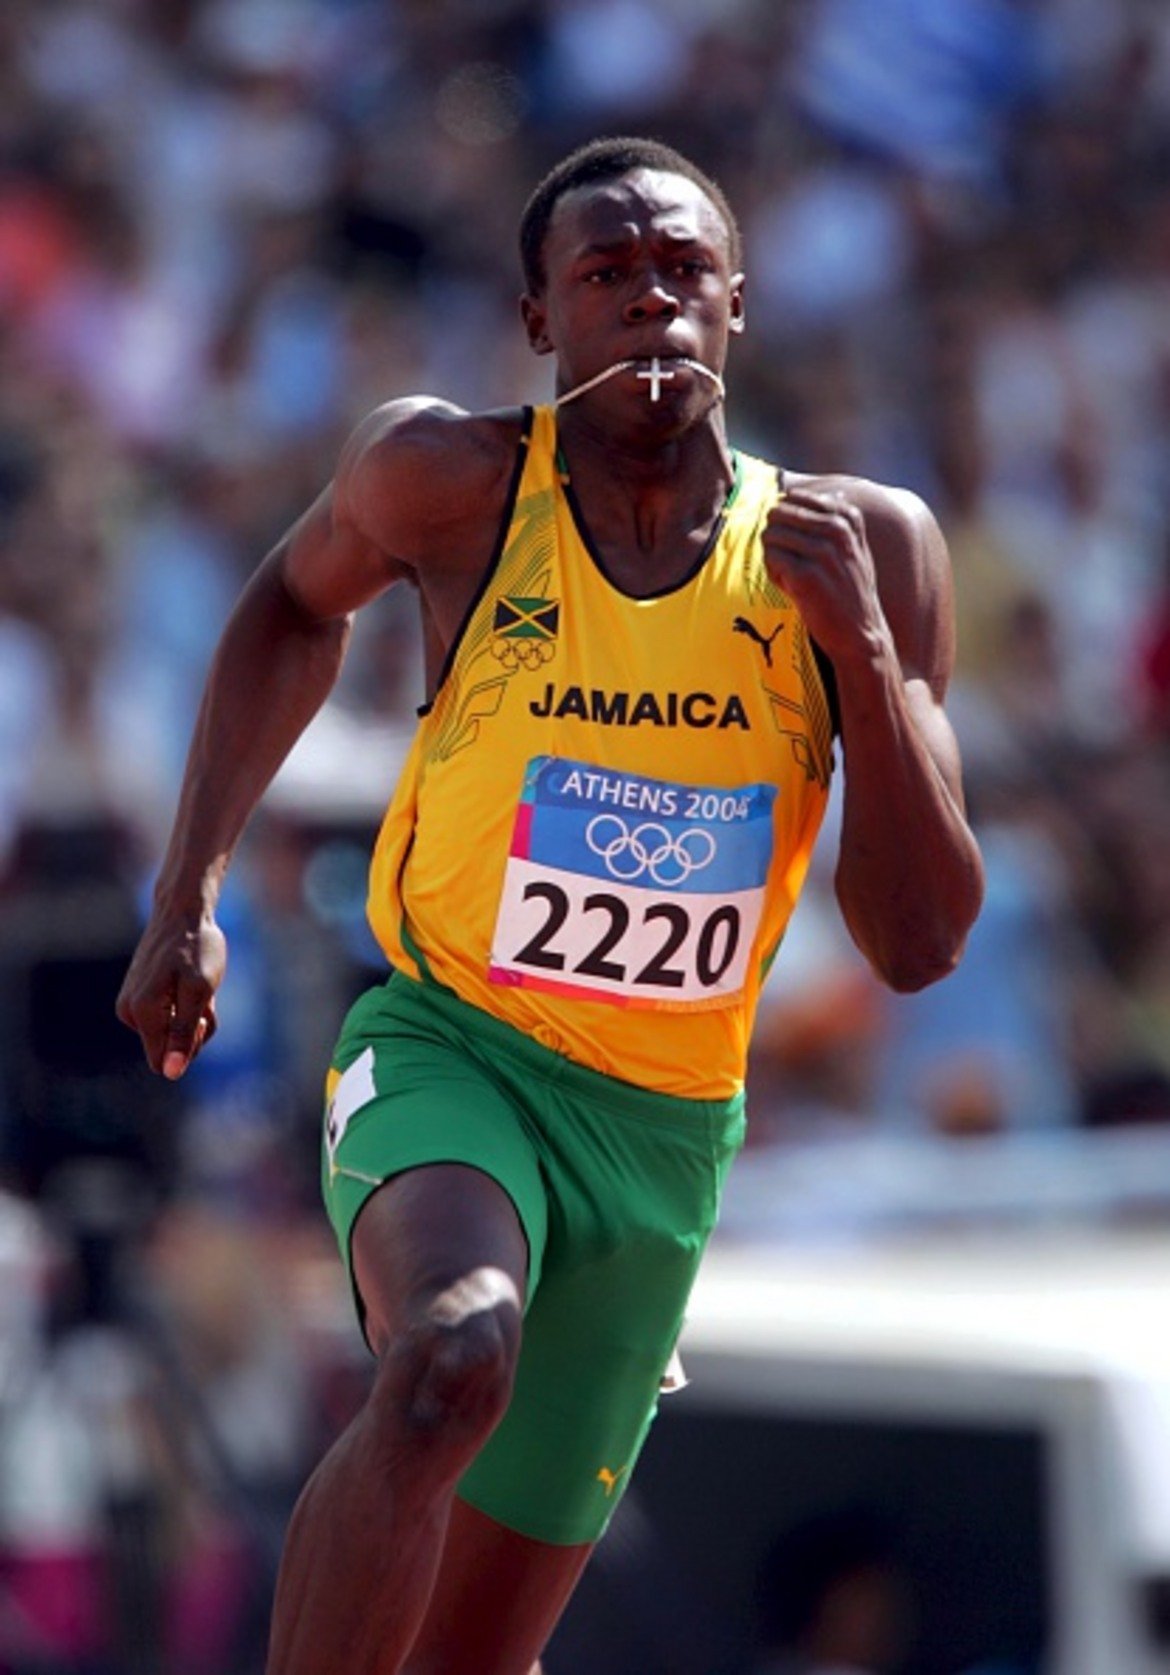 Олимпийският дебют
Година по-късно, когато е на 17, Болт представлява Ямайка на Олимпийските игри в Атина. Тогава контузия го спира още в първи кръг, но олимпийския му дебют бележи началото на професионалната му кариера като спринтьор.
